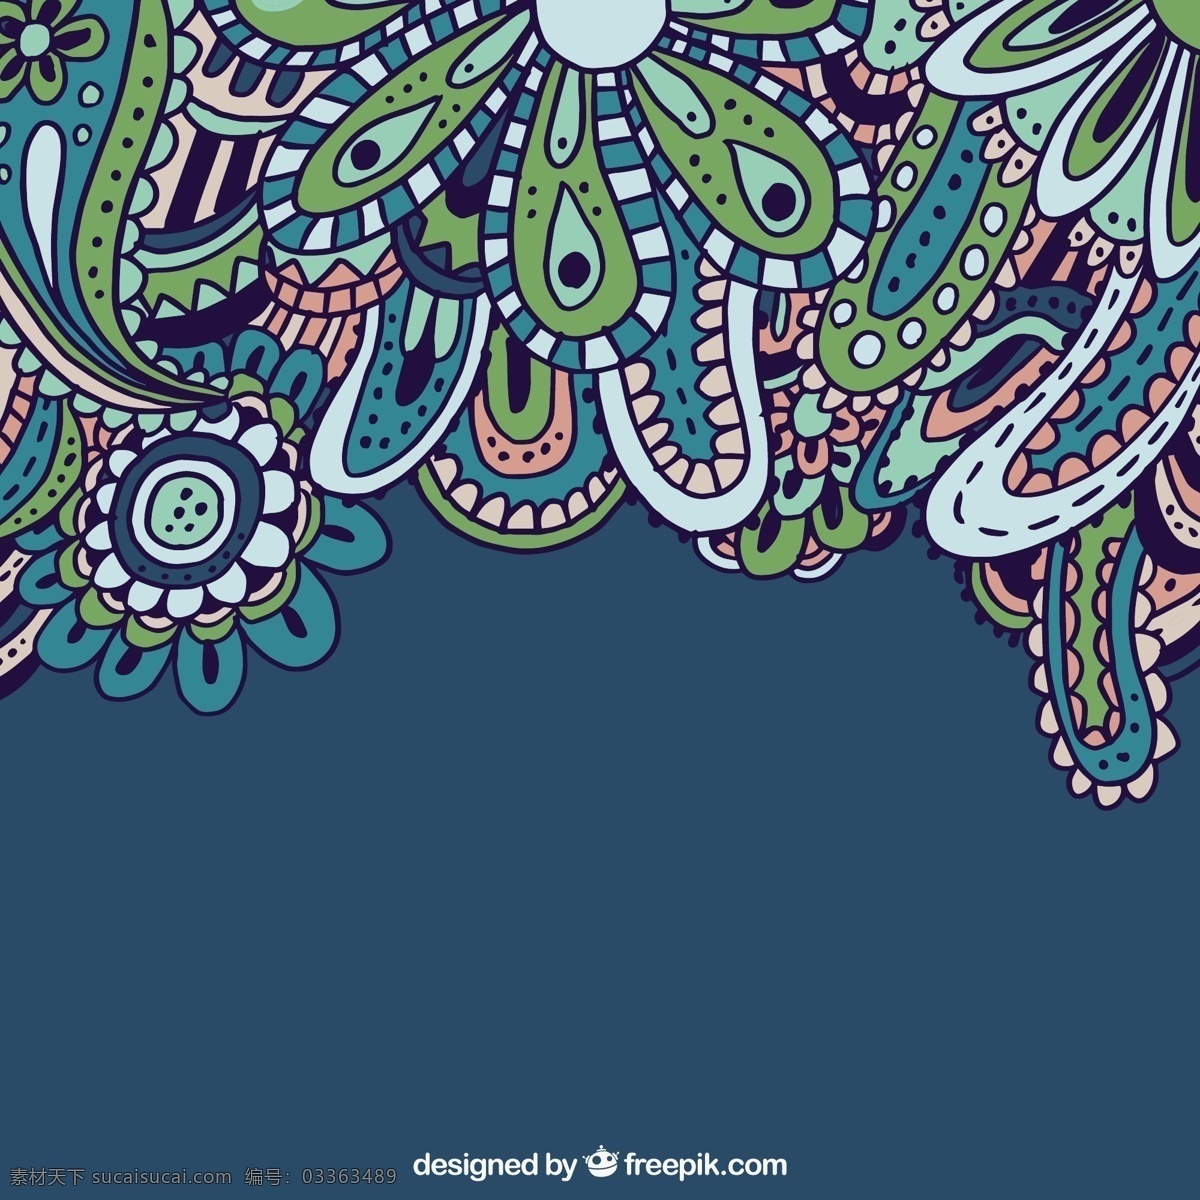 手绘 佩 斯利 背景 花卉 风格 花 手 饰品 植物的背景下 印度 绘画 花卉装饰 花纹 装饰 手工绘图 绘制的 粗略的风格 青色 天蓝色